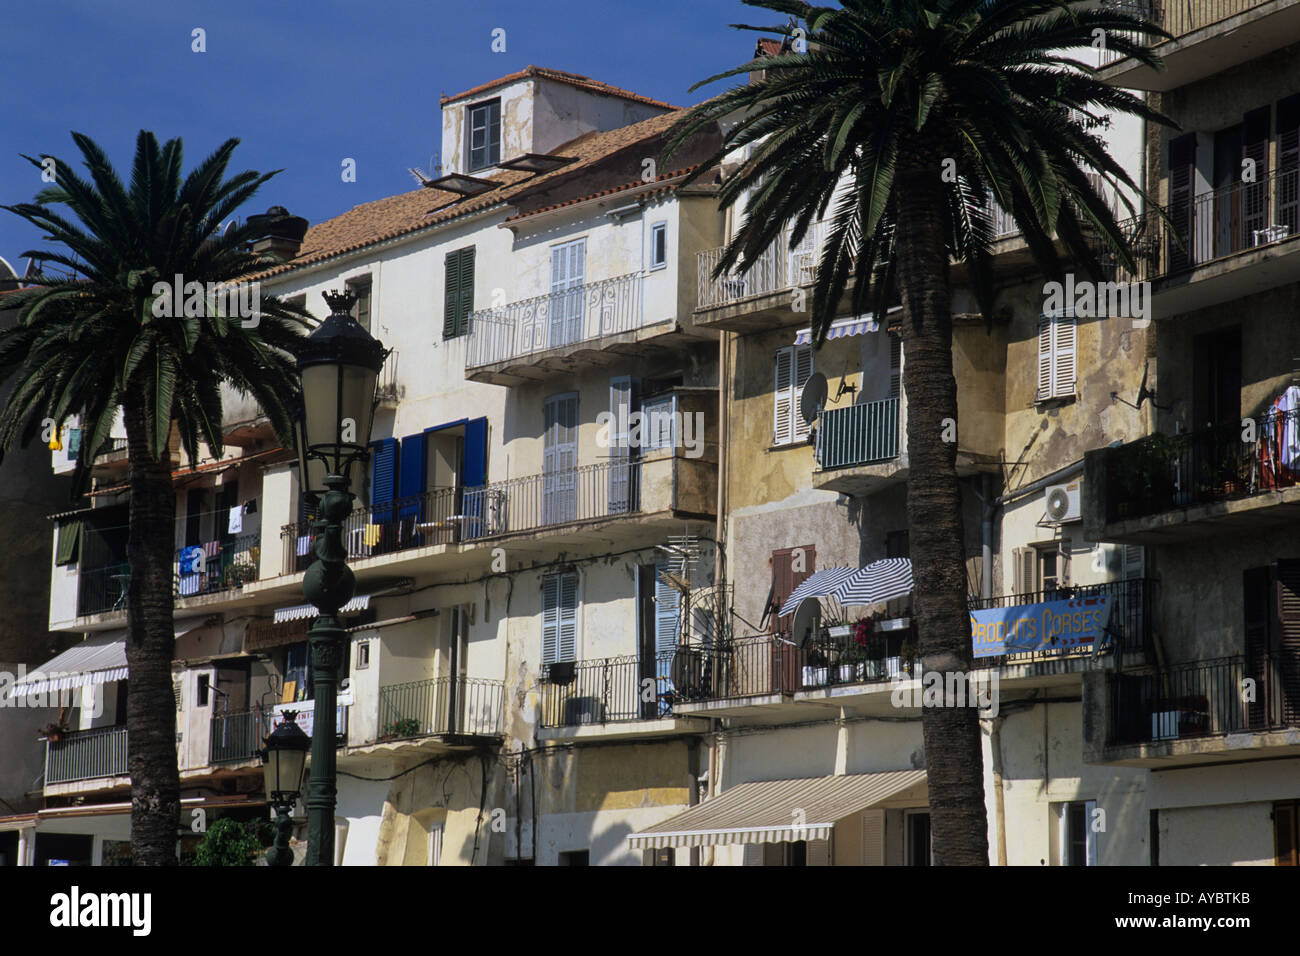 Balkone und Fensterläden. Farbenfrohe Gebäude direkt am Wasser im Hafen von Calvi, Corsica. Stockfoto